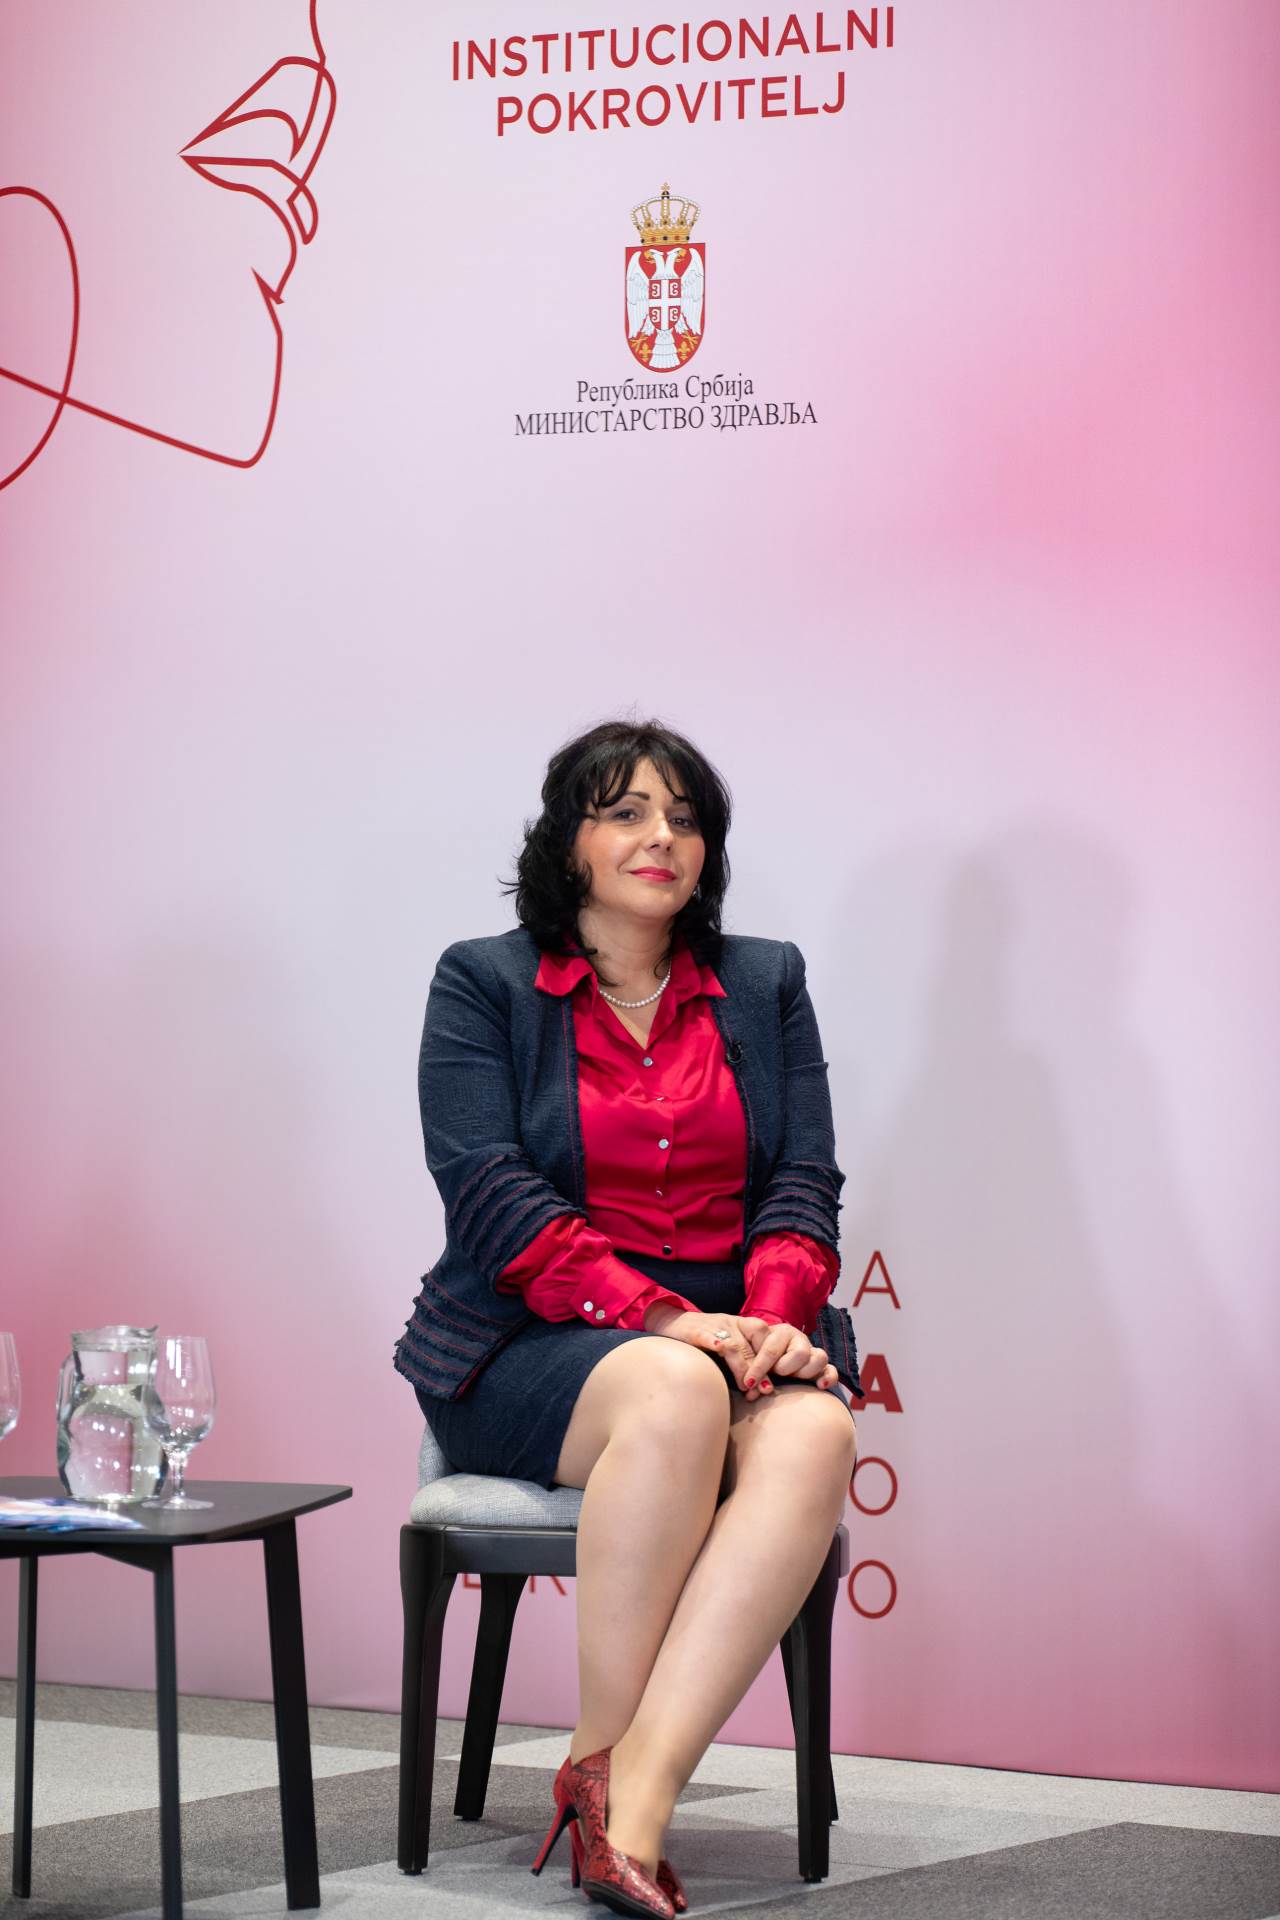  kardiolog Marija Zdravković govorila je na panelu o prevenciji najčešćih ženskih oboljenja 